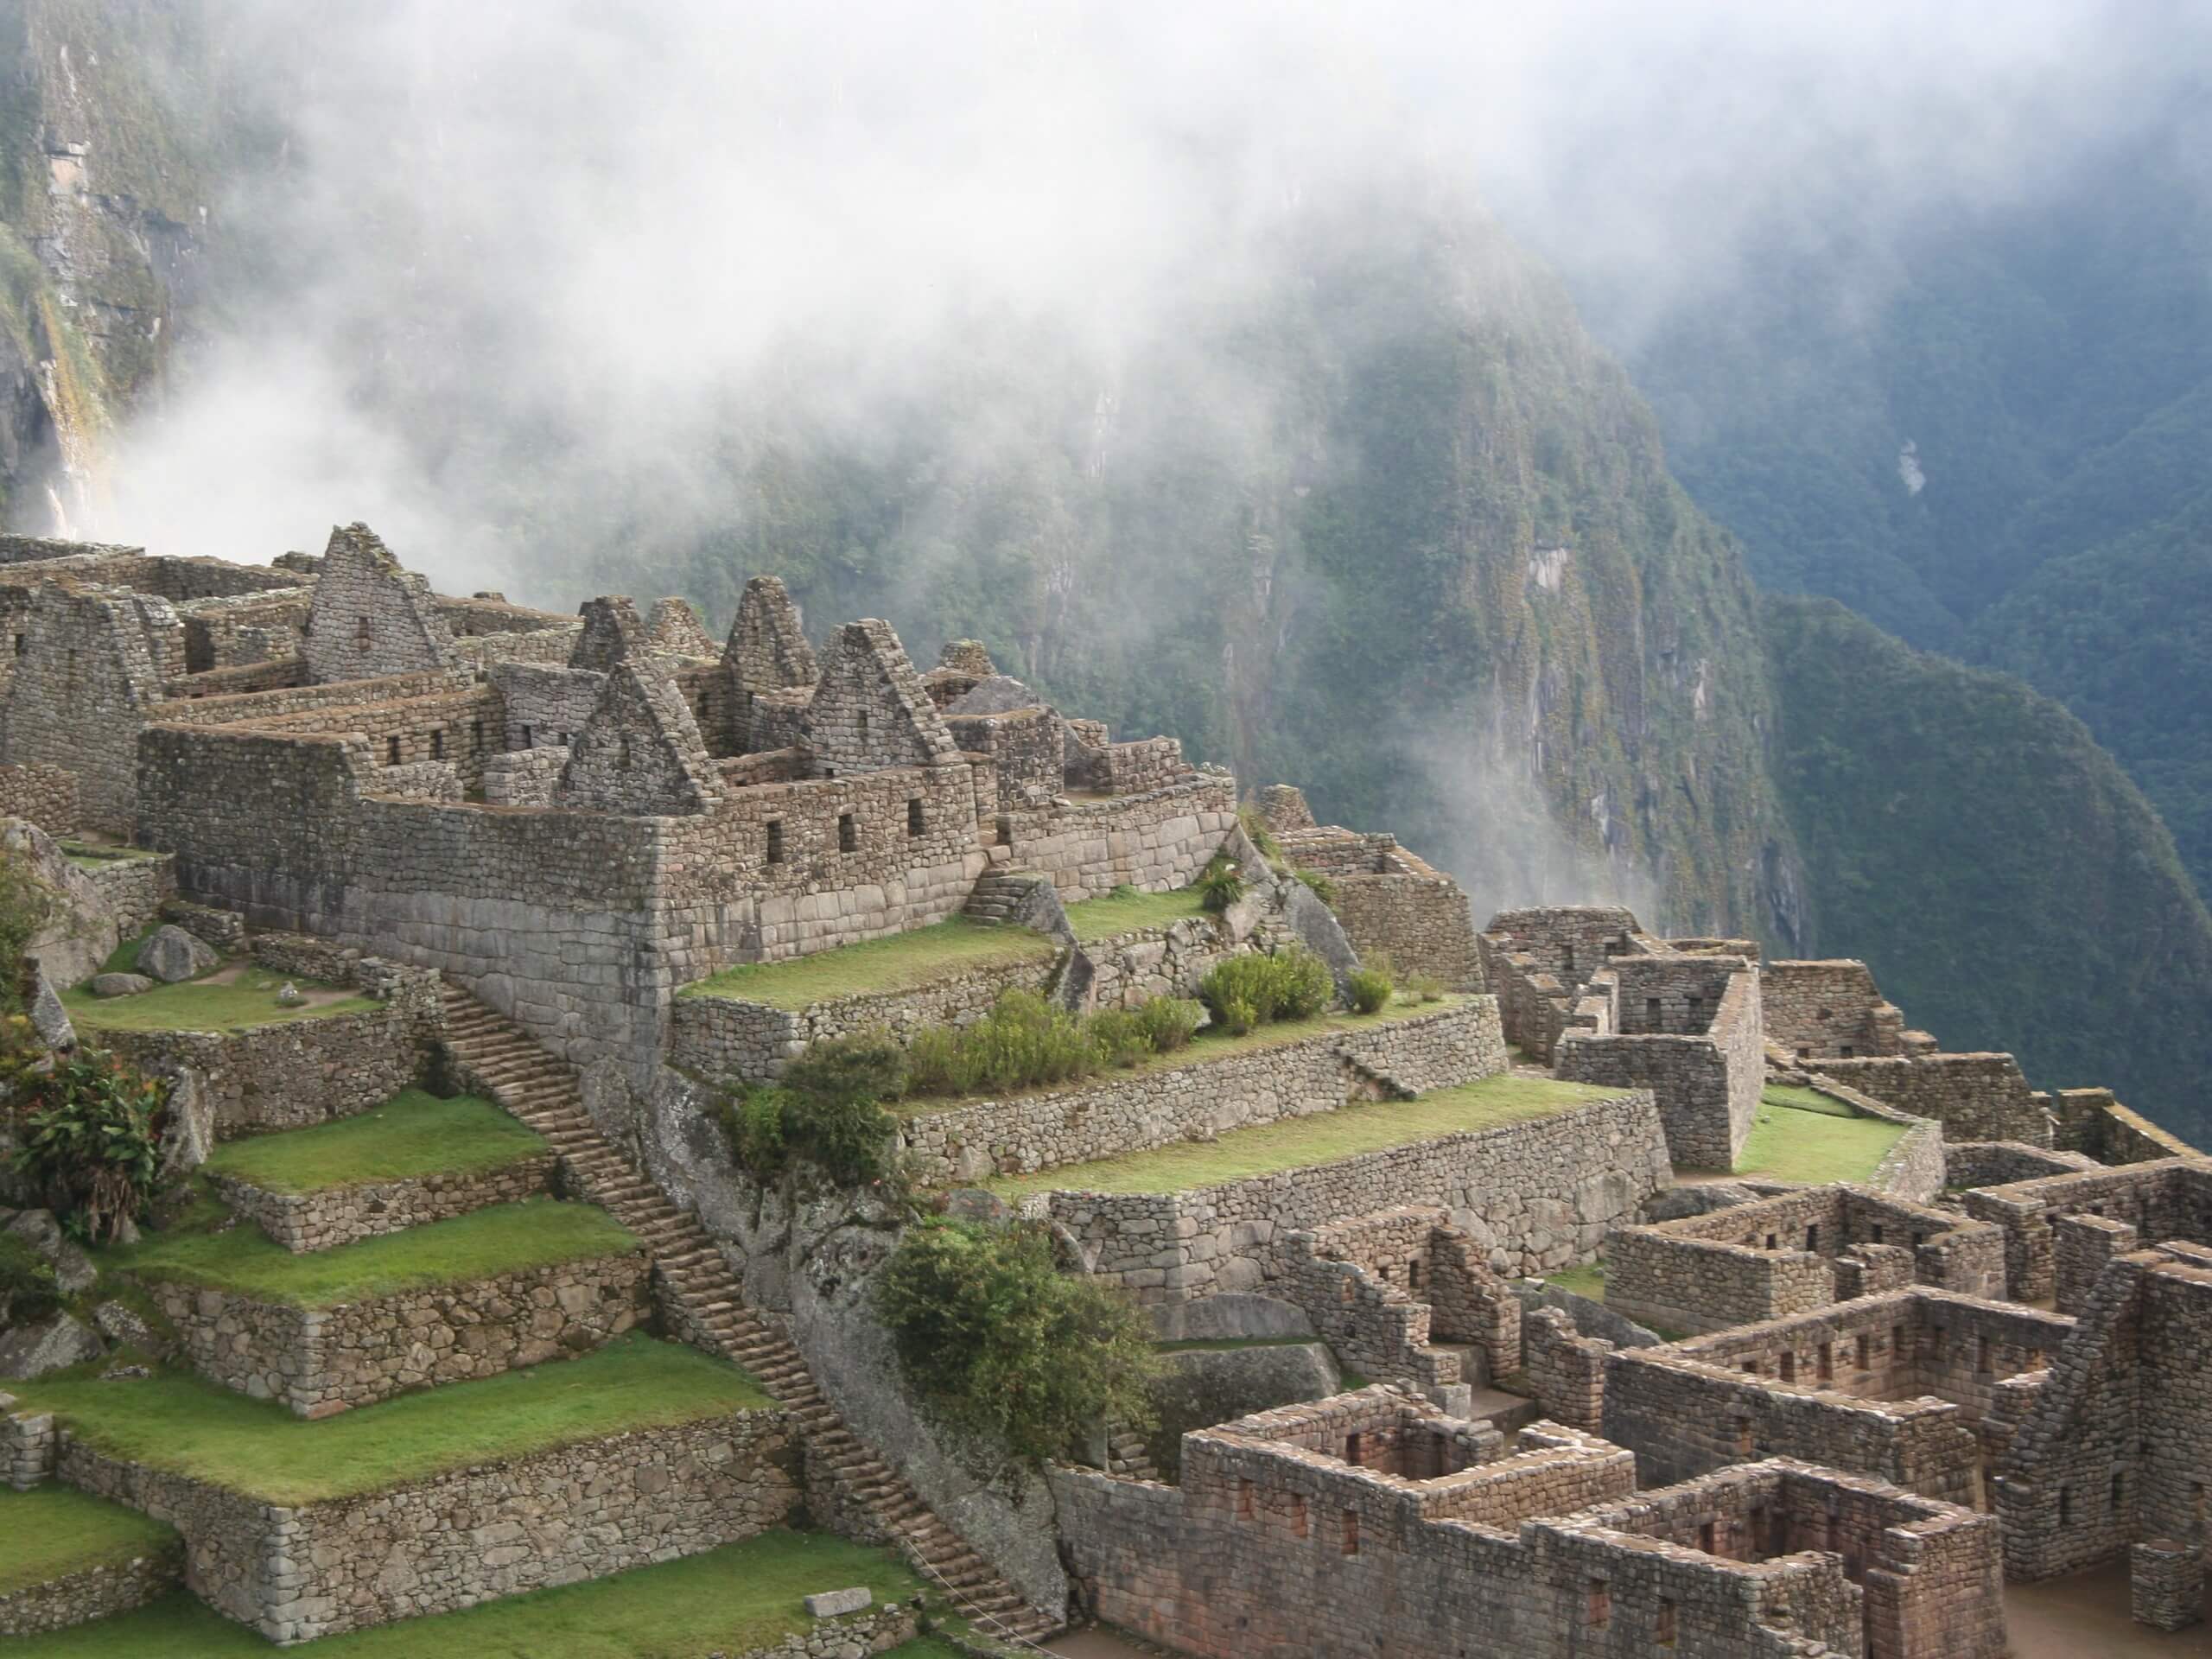 Clouds covering the Inca ruins in Machu Picchu